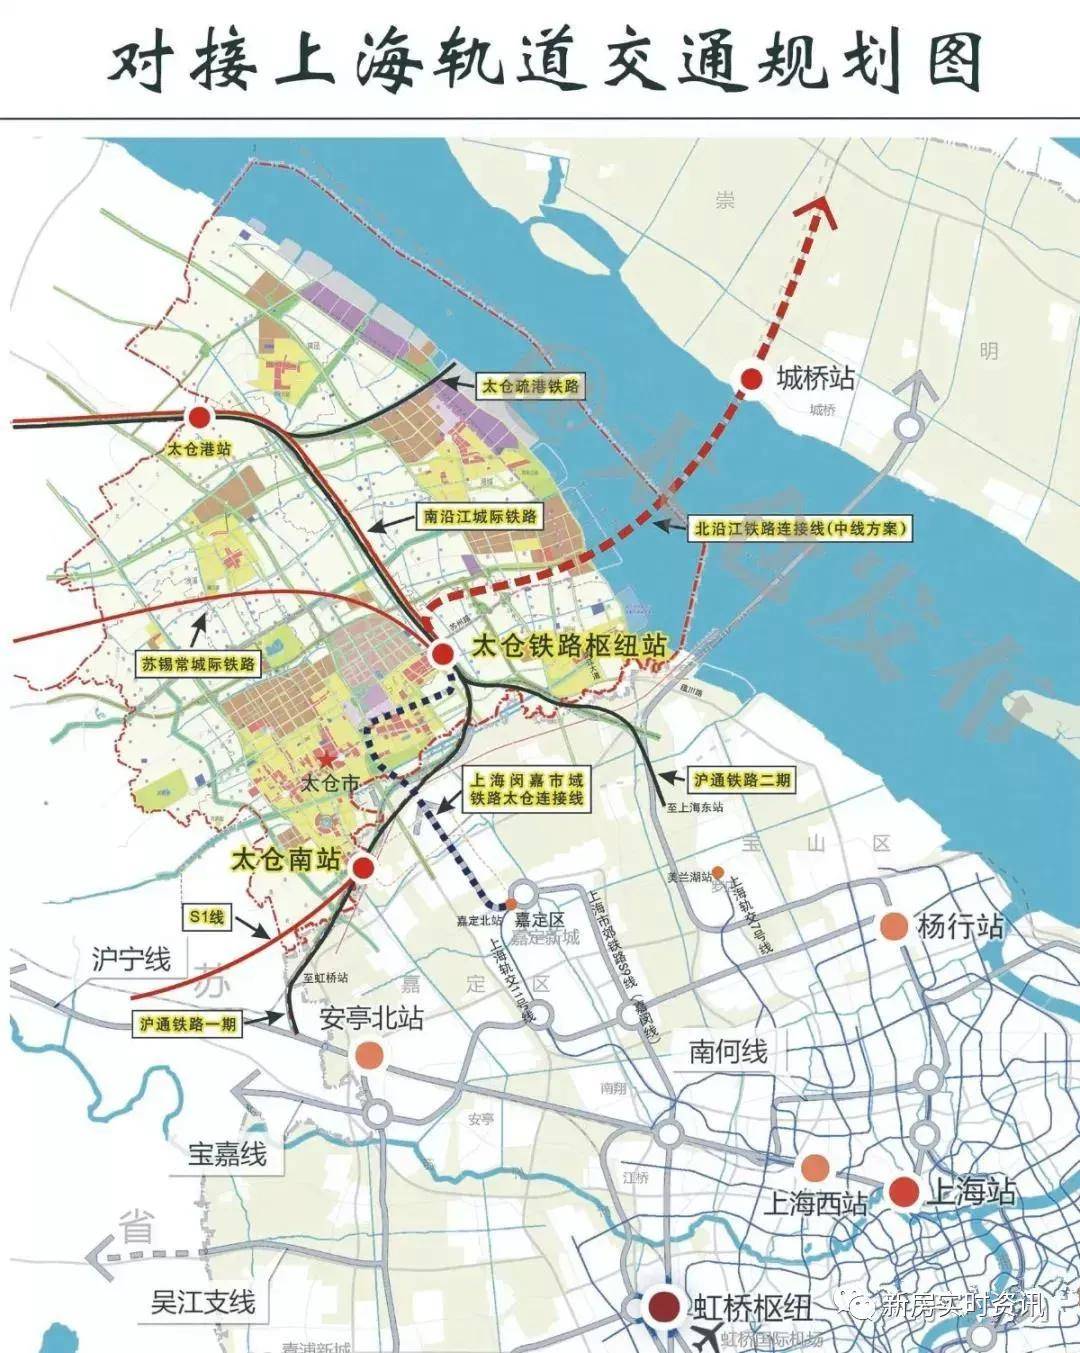 交通上虽然目前还有短板,但是很快会被补齐,苏州s1支线太仓段,上海11